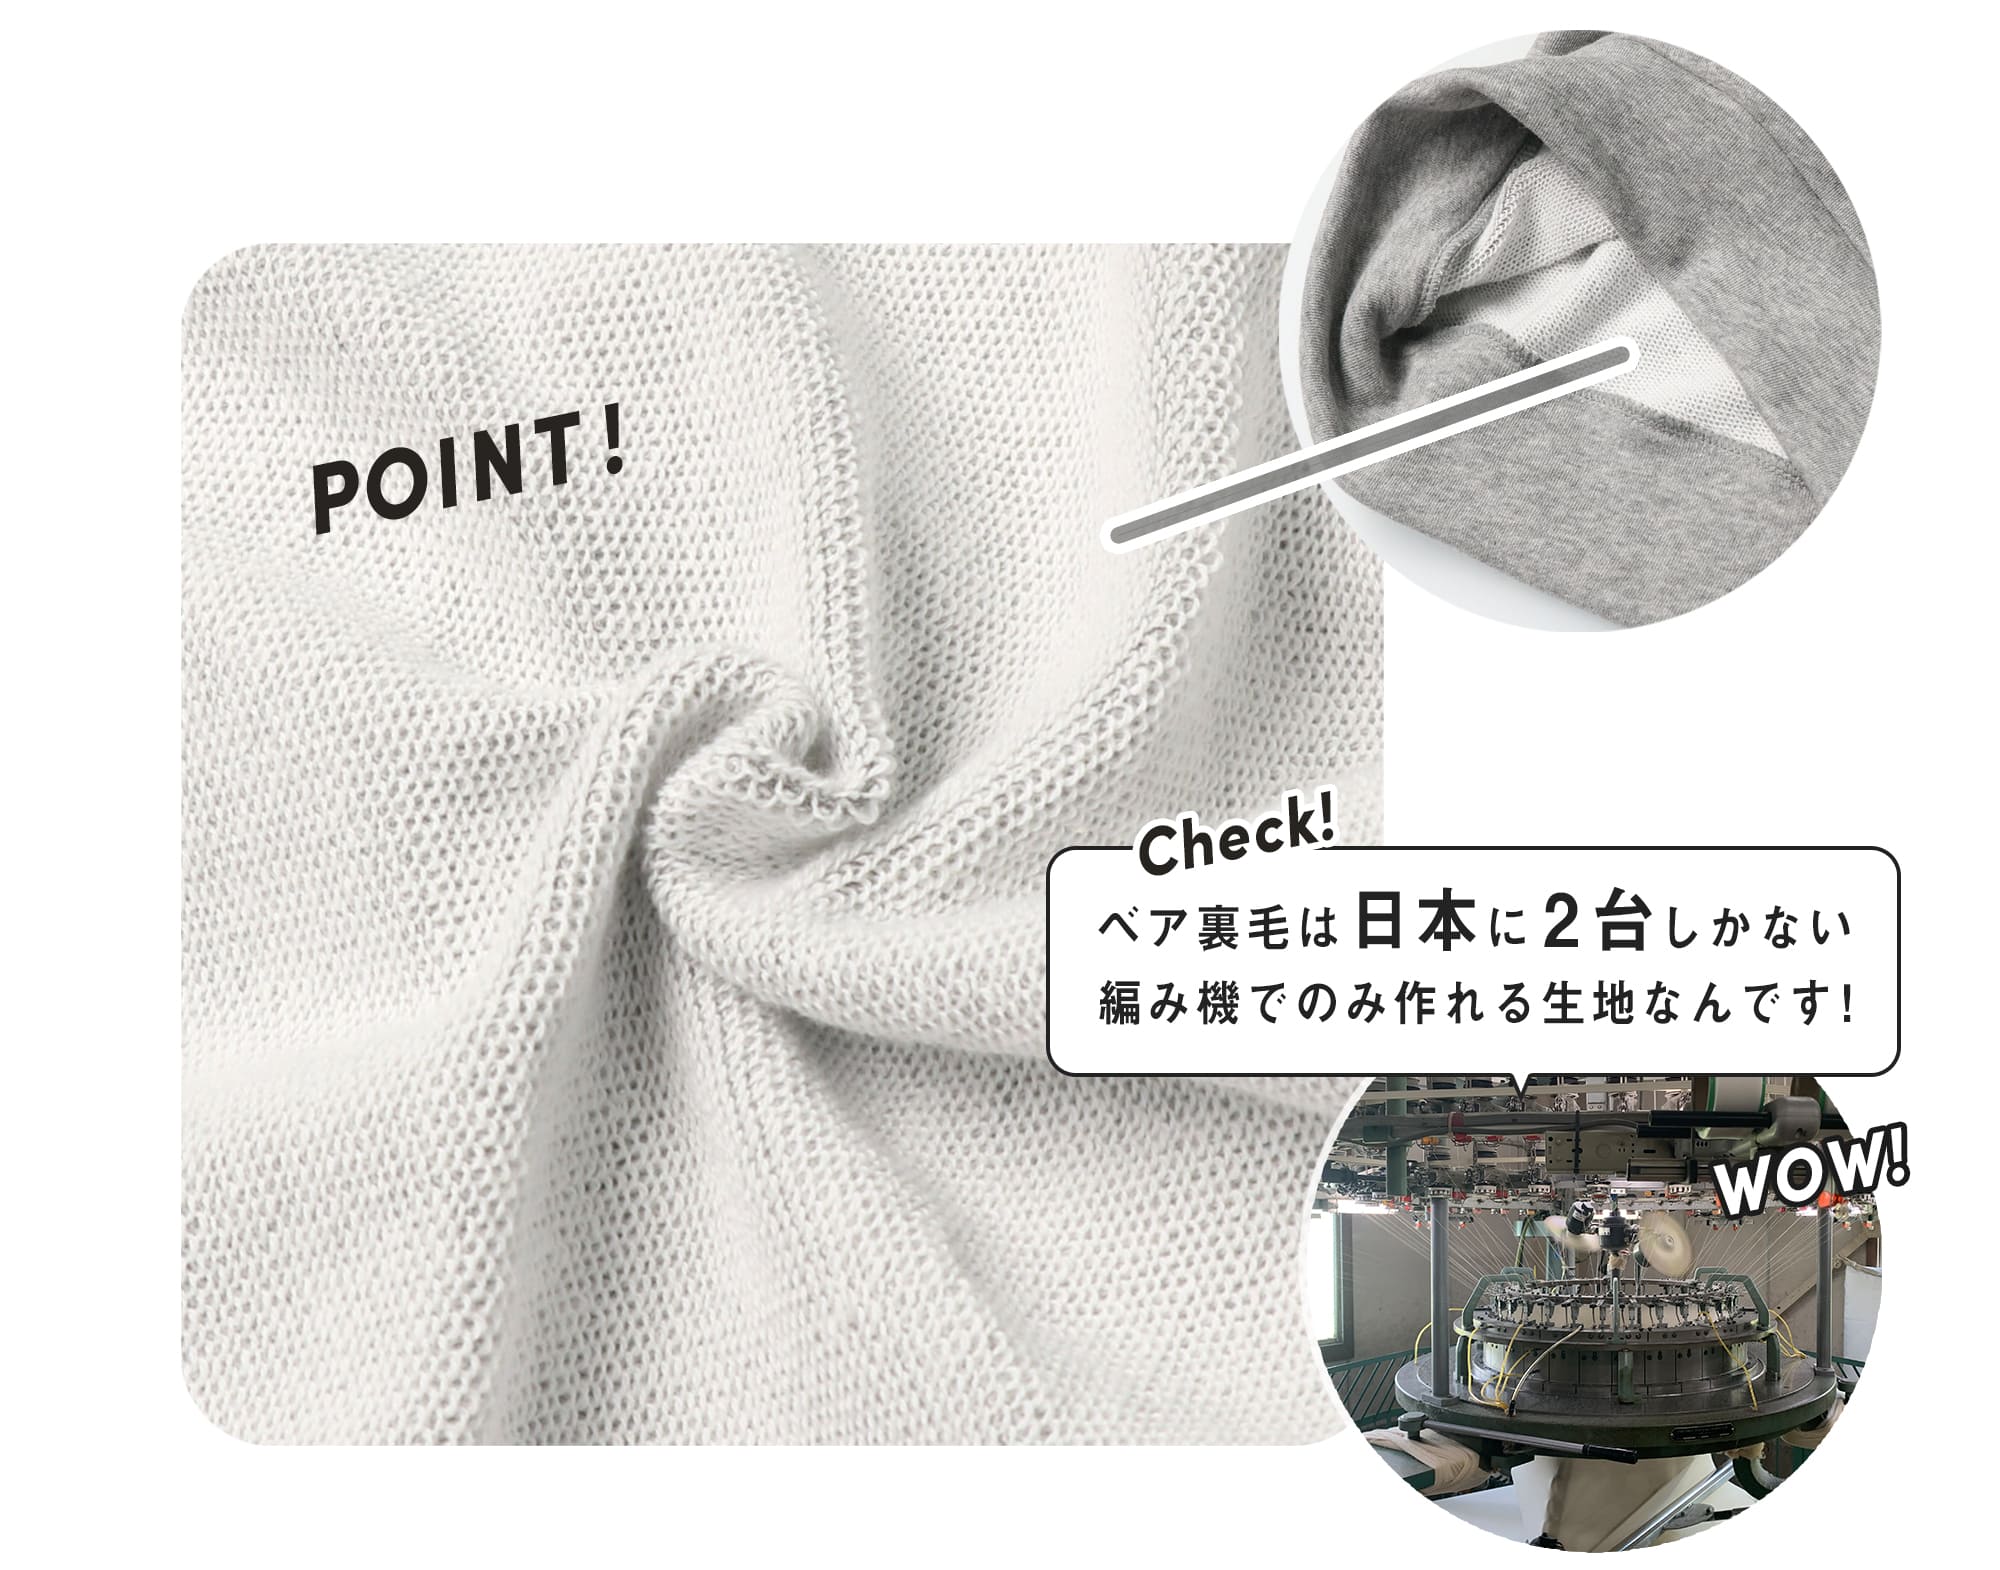 POINT!ベア裏毛は日本に2台しかない編み機でのみ作れる生地なんです